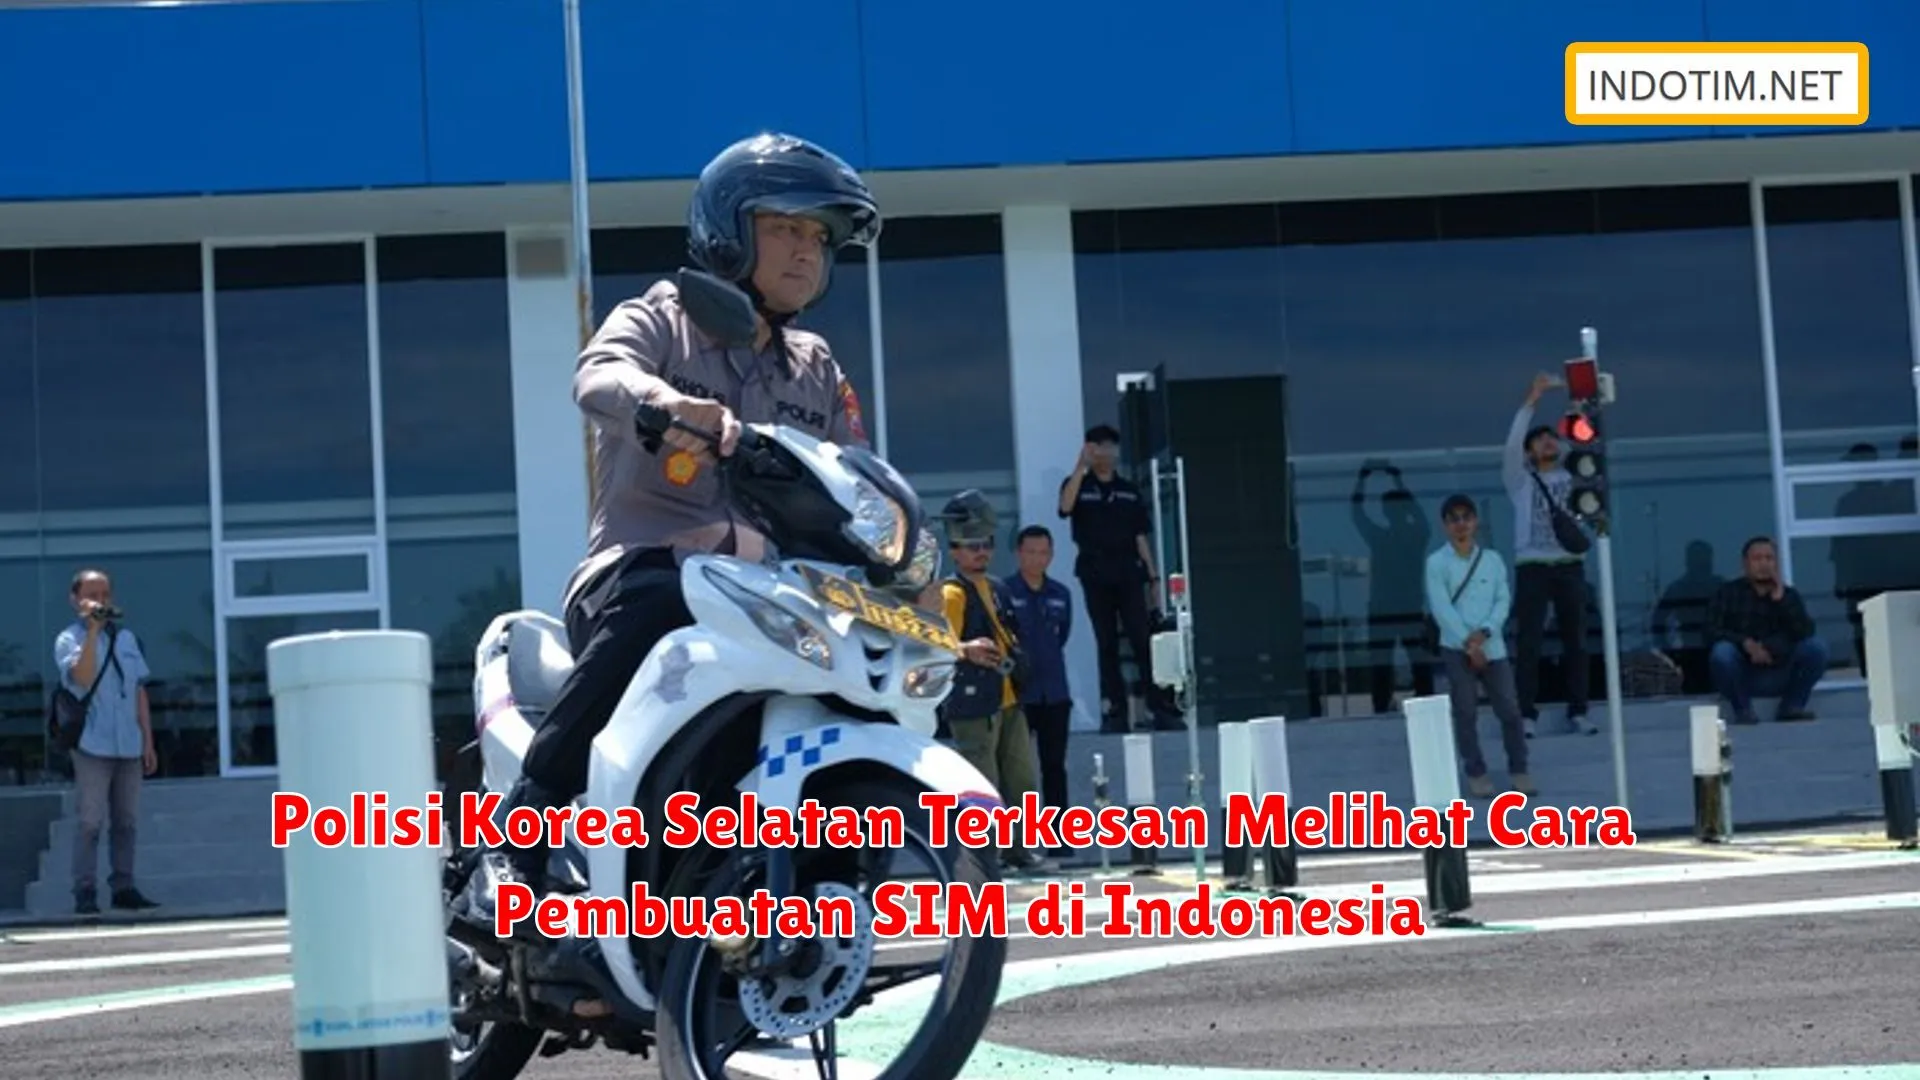 Polisi Korea Selatan Terkesan Melihat Cara Pembuatan SIM di Indonesia